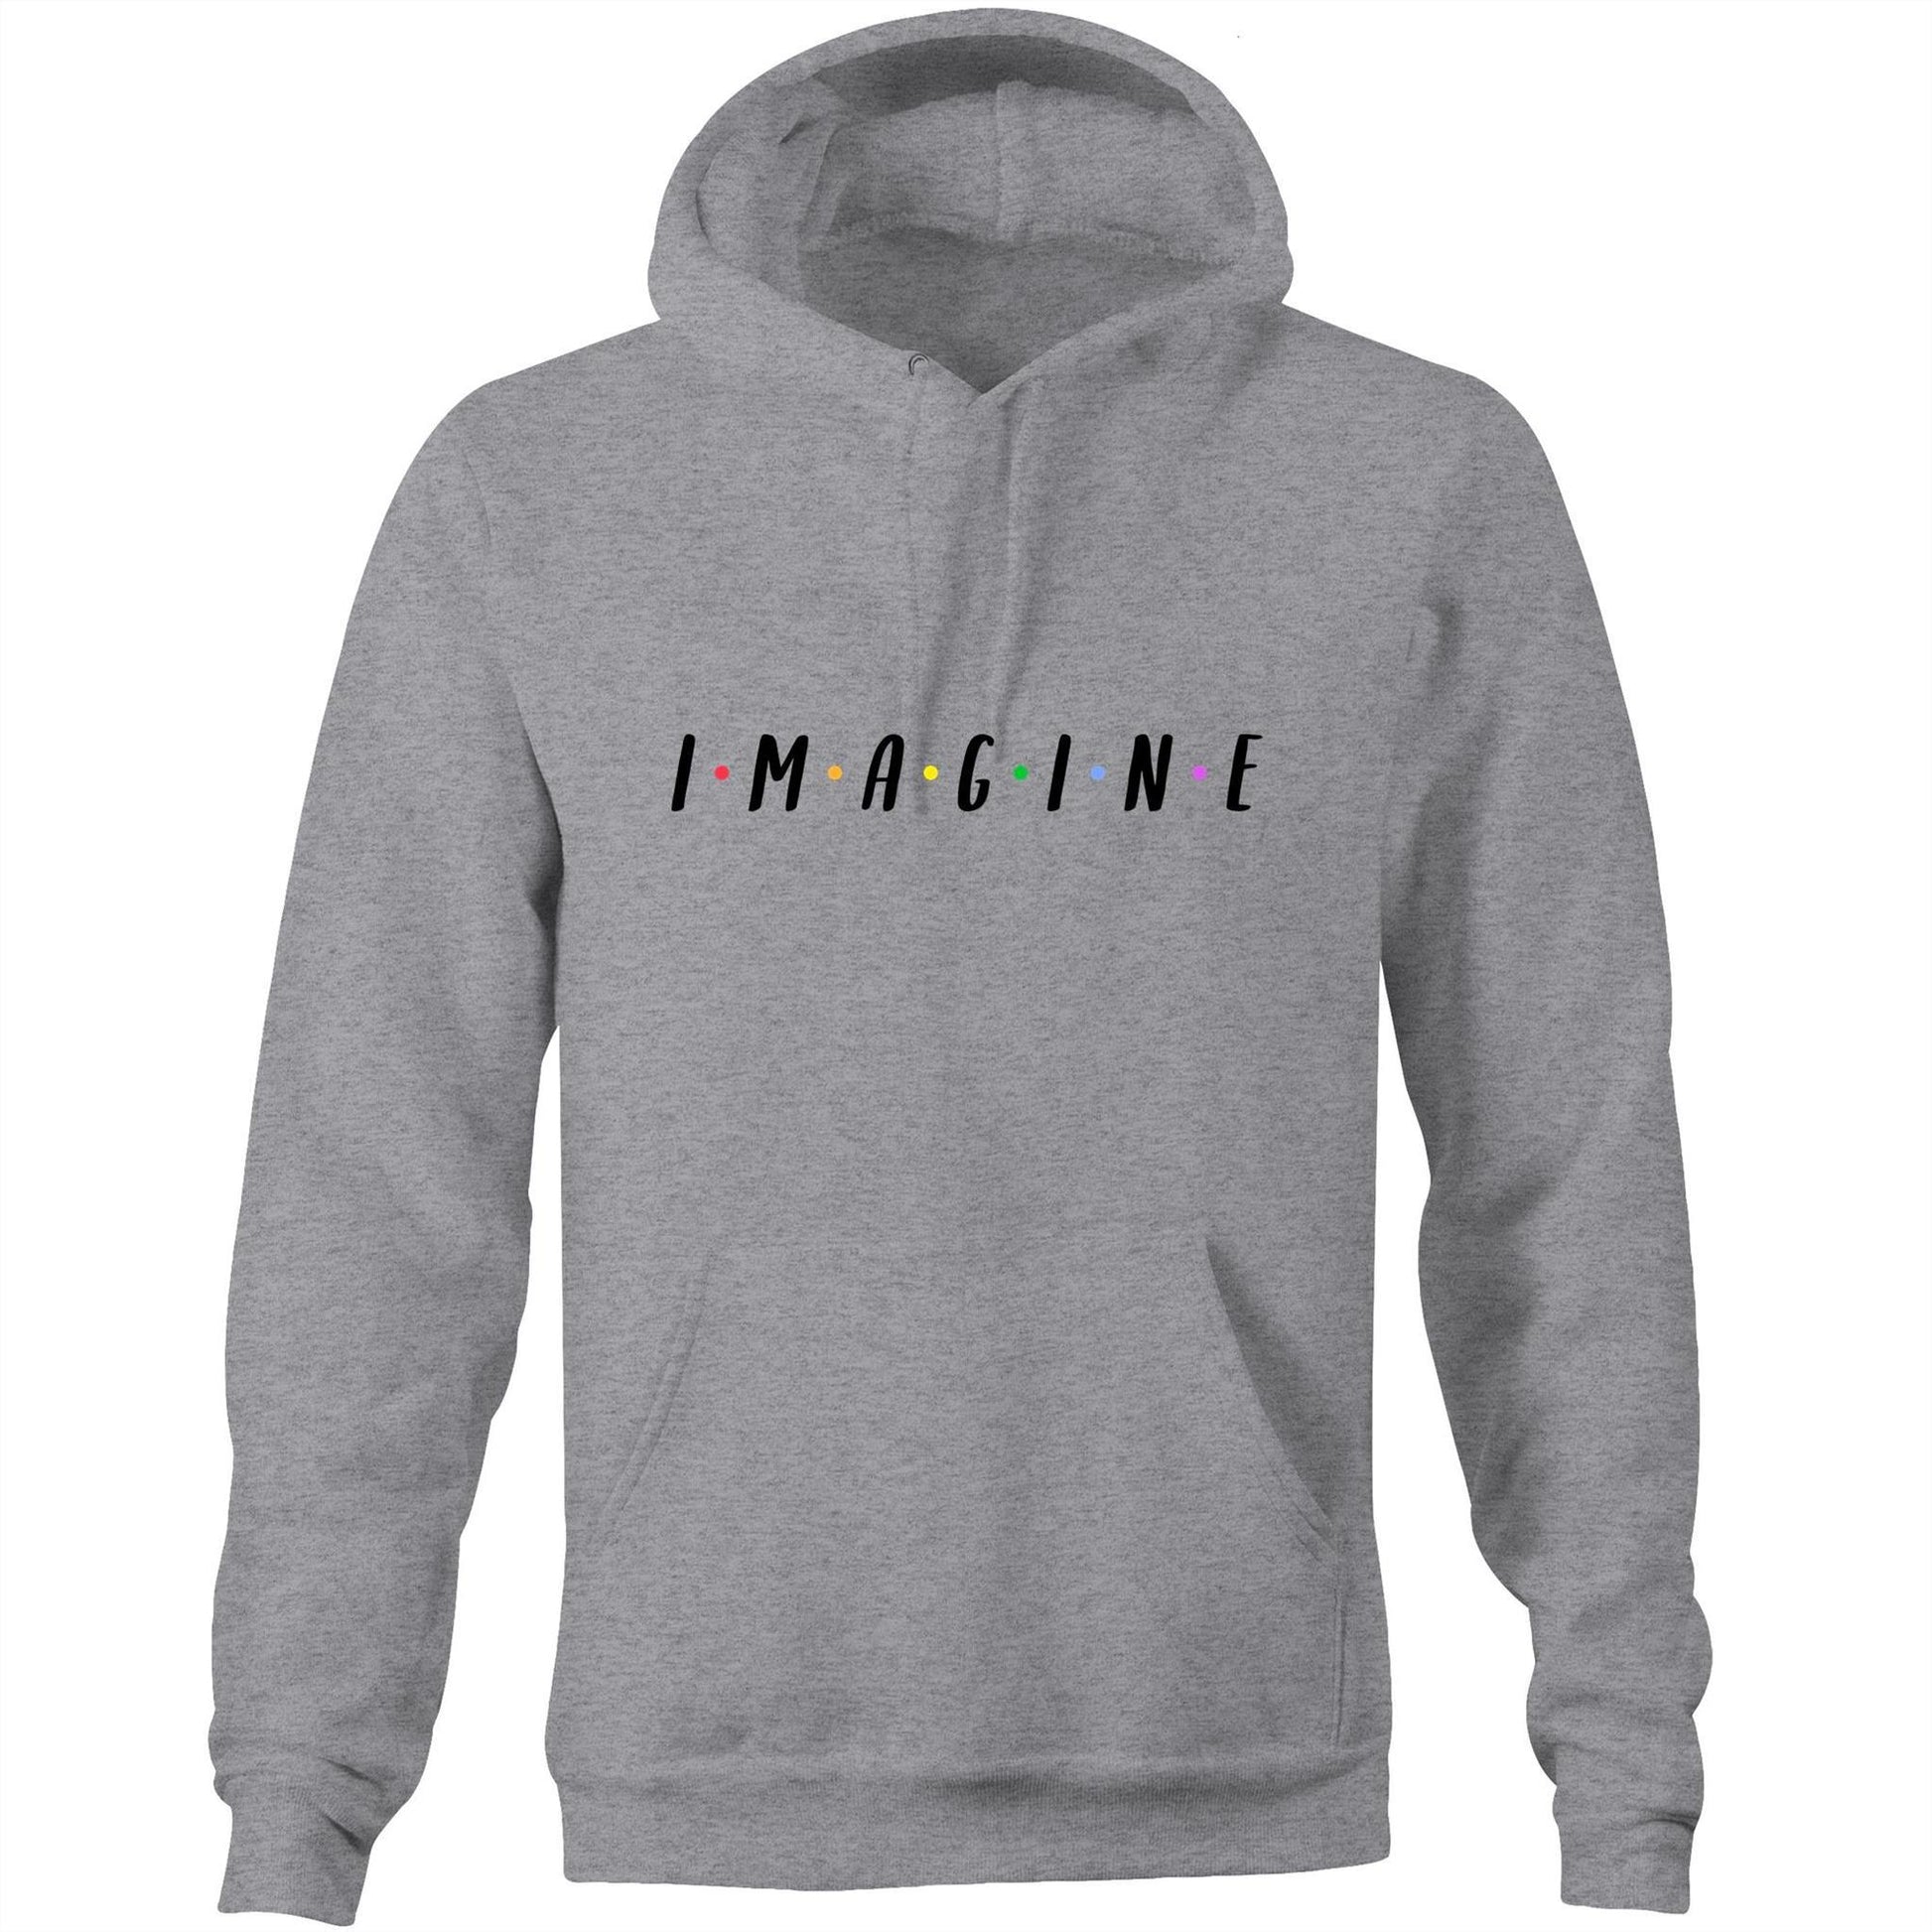 Imagine - Pocket Hoodie Sweatshirt Grey Marle Hoodie Mens Womens